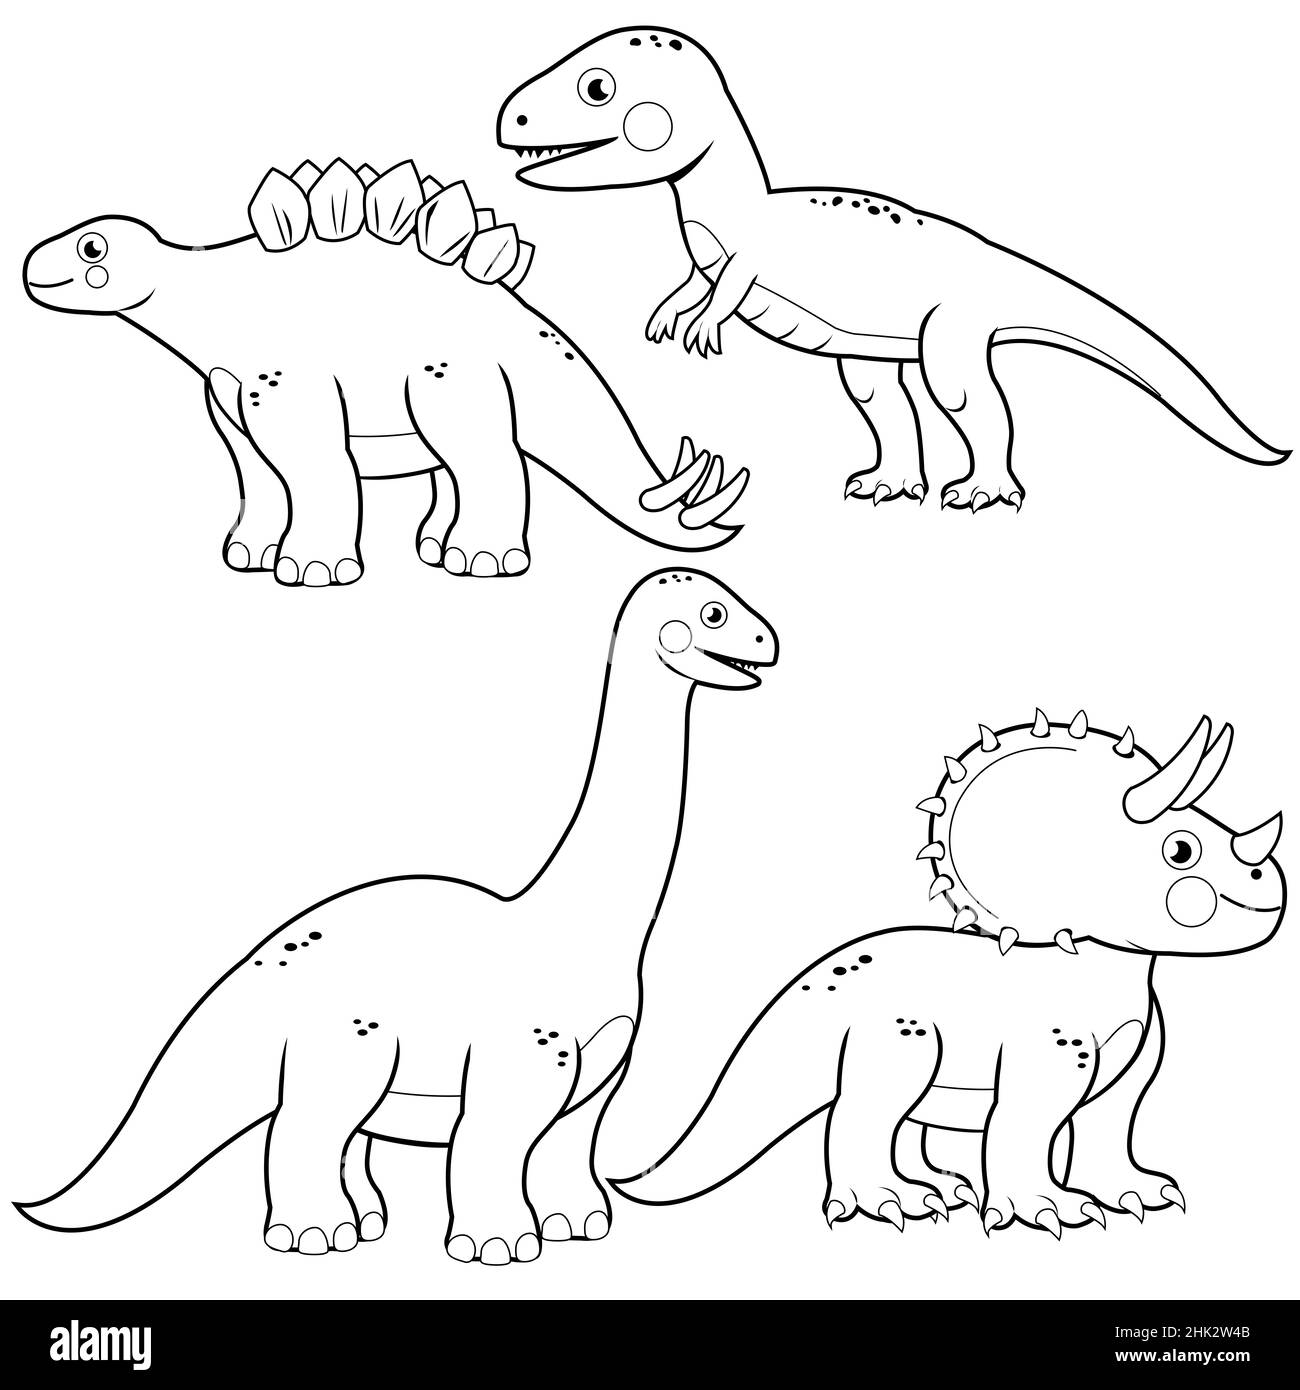 Collection d'illustrations dinosaures.Verso et page de couleur blanche Banque D'Images